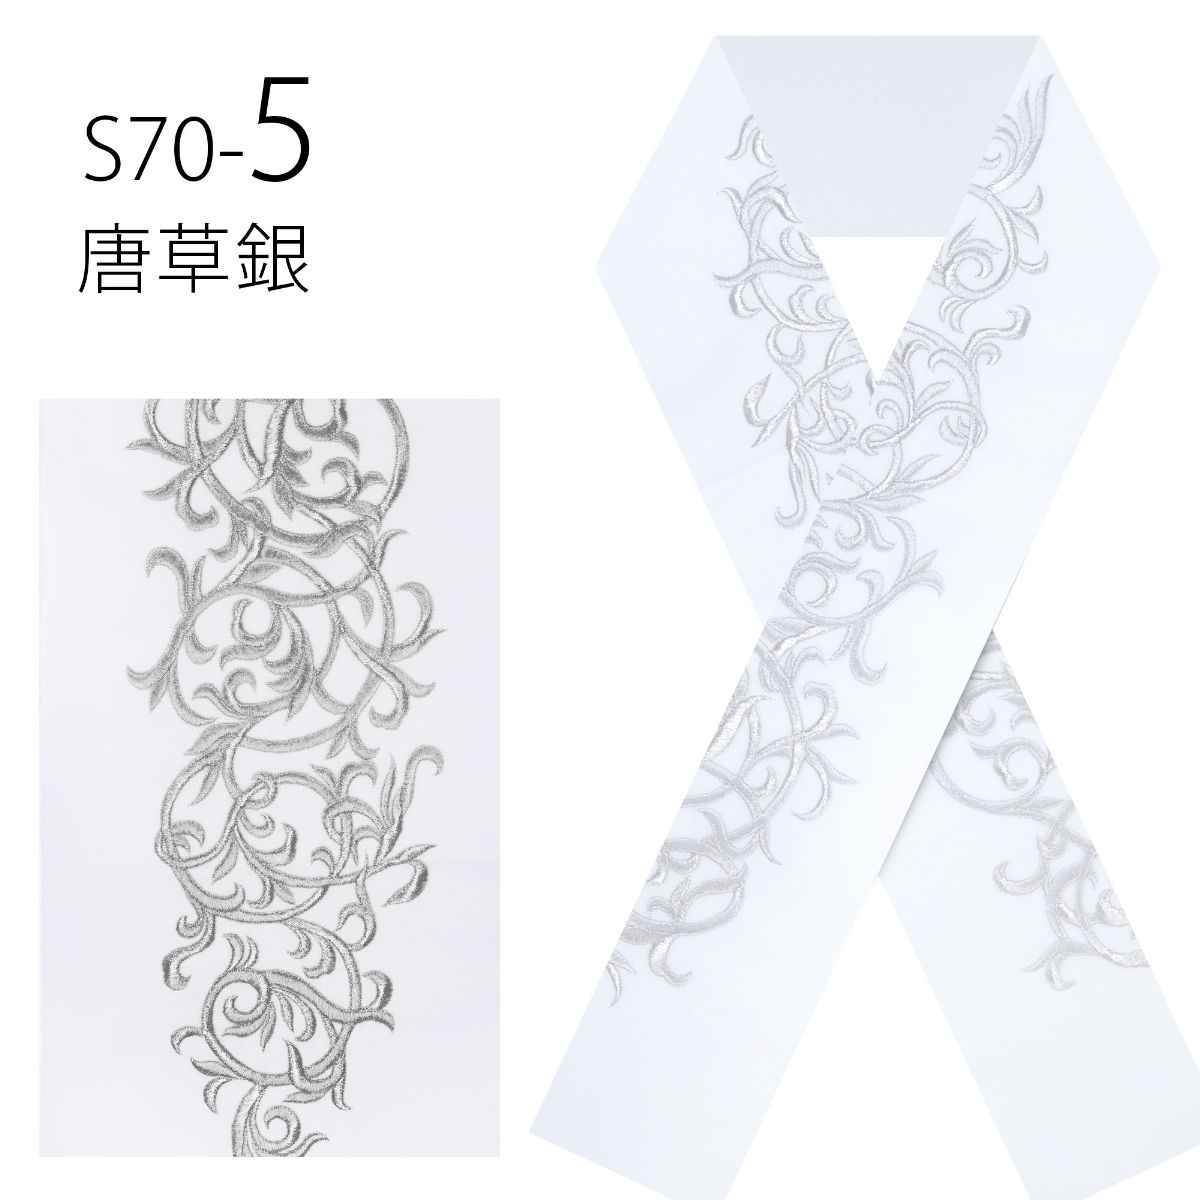 日本製 白金 刺繍 半衿 上品な吉祥文様 振袖 成人式 半衿 選べる5柄 白